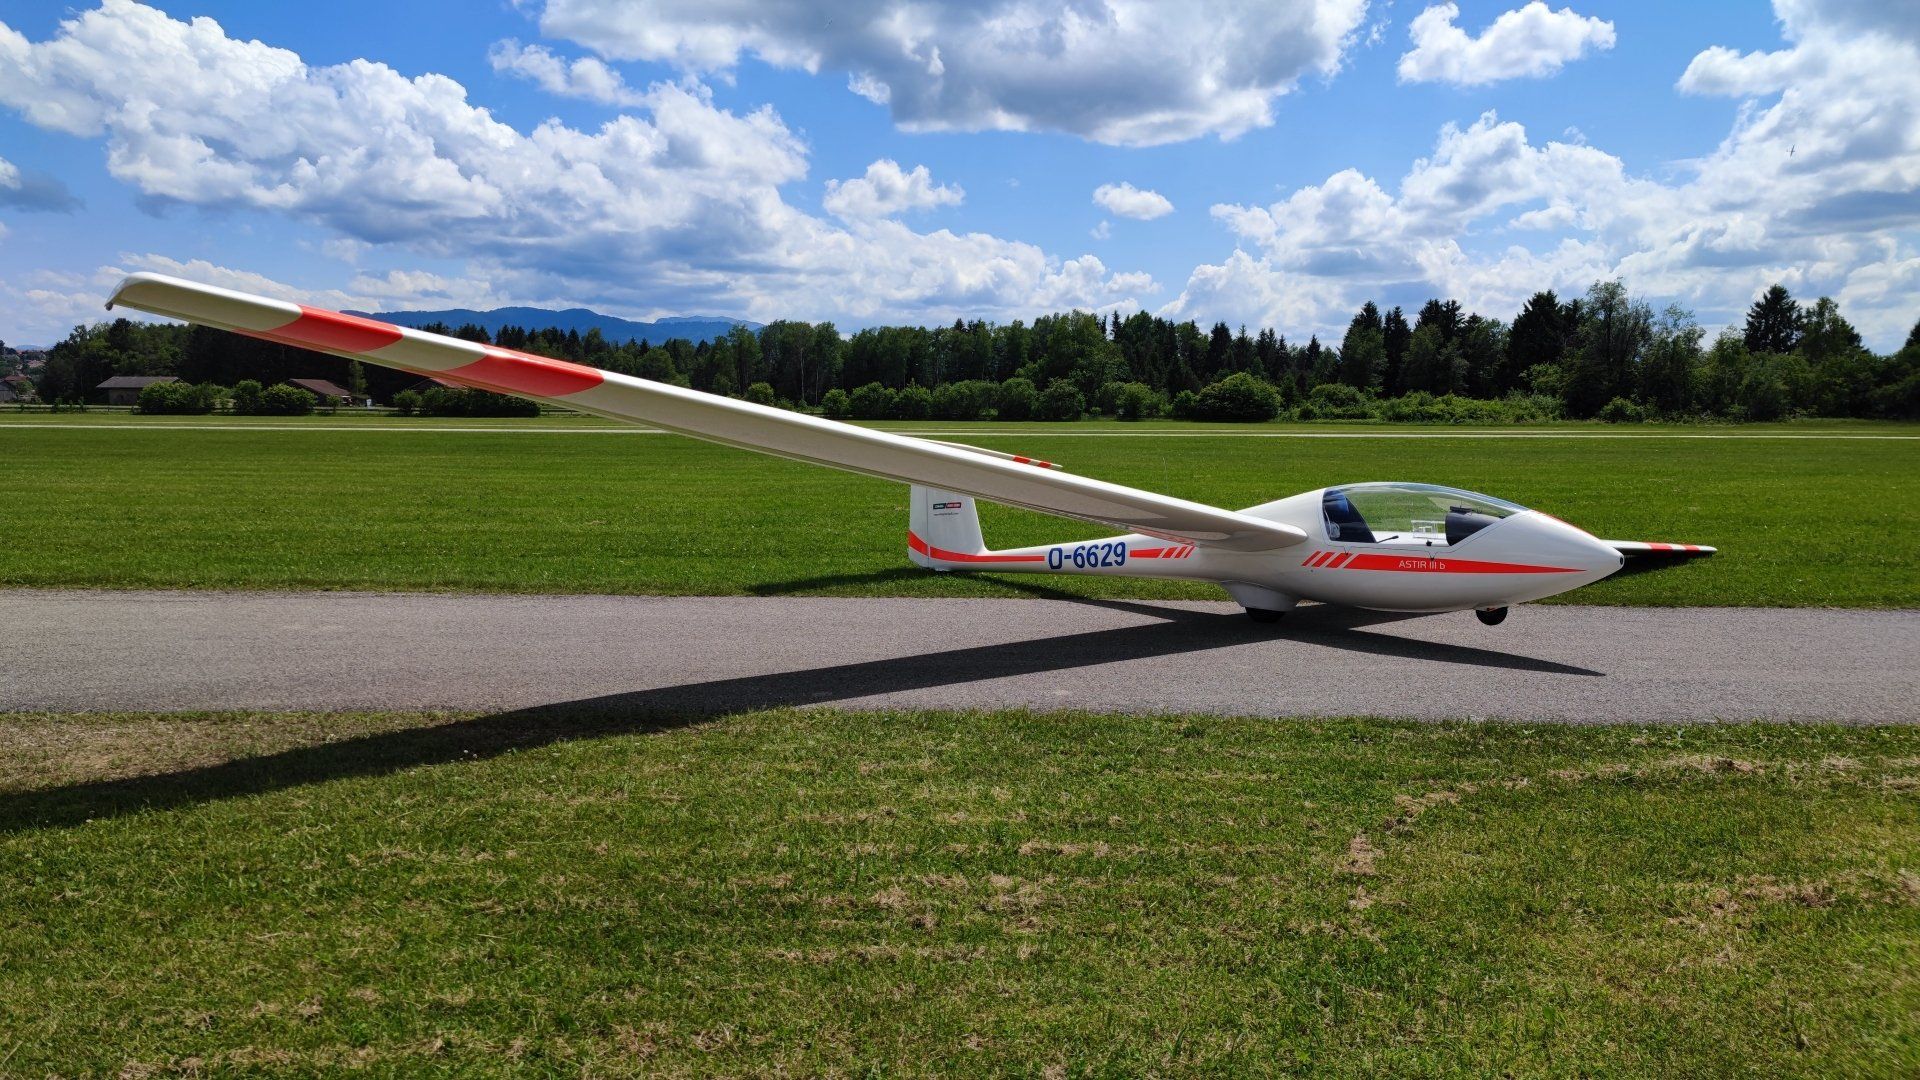 Das Segelflugzeug D-6629 startet am Segelflugzentrum Königsdorf im Windenstart. Flugzeugtyp ist  Club Astir III b